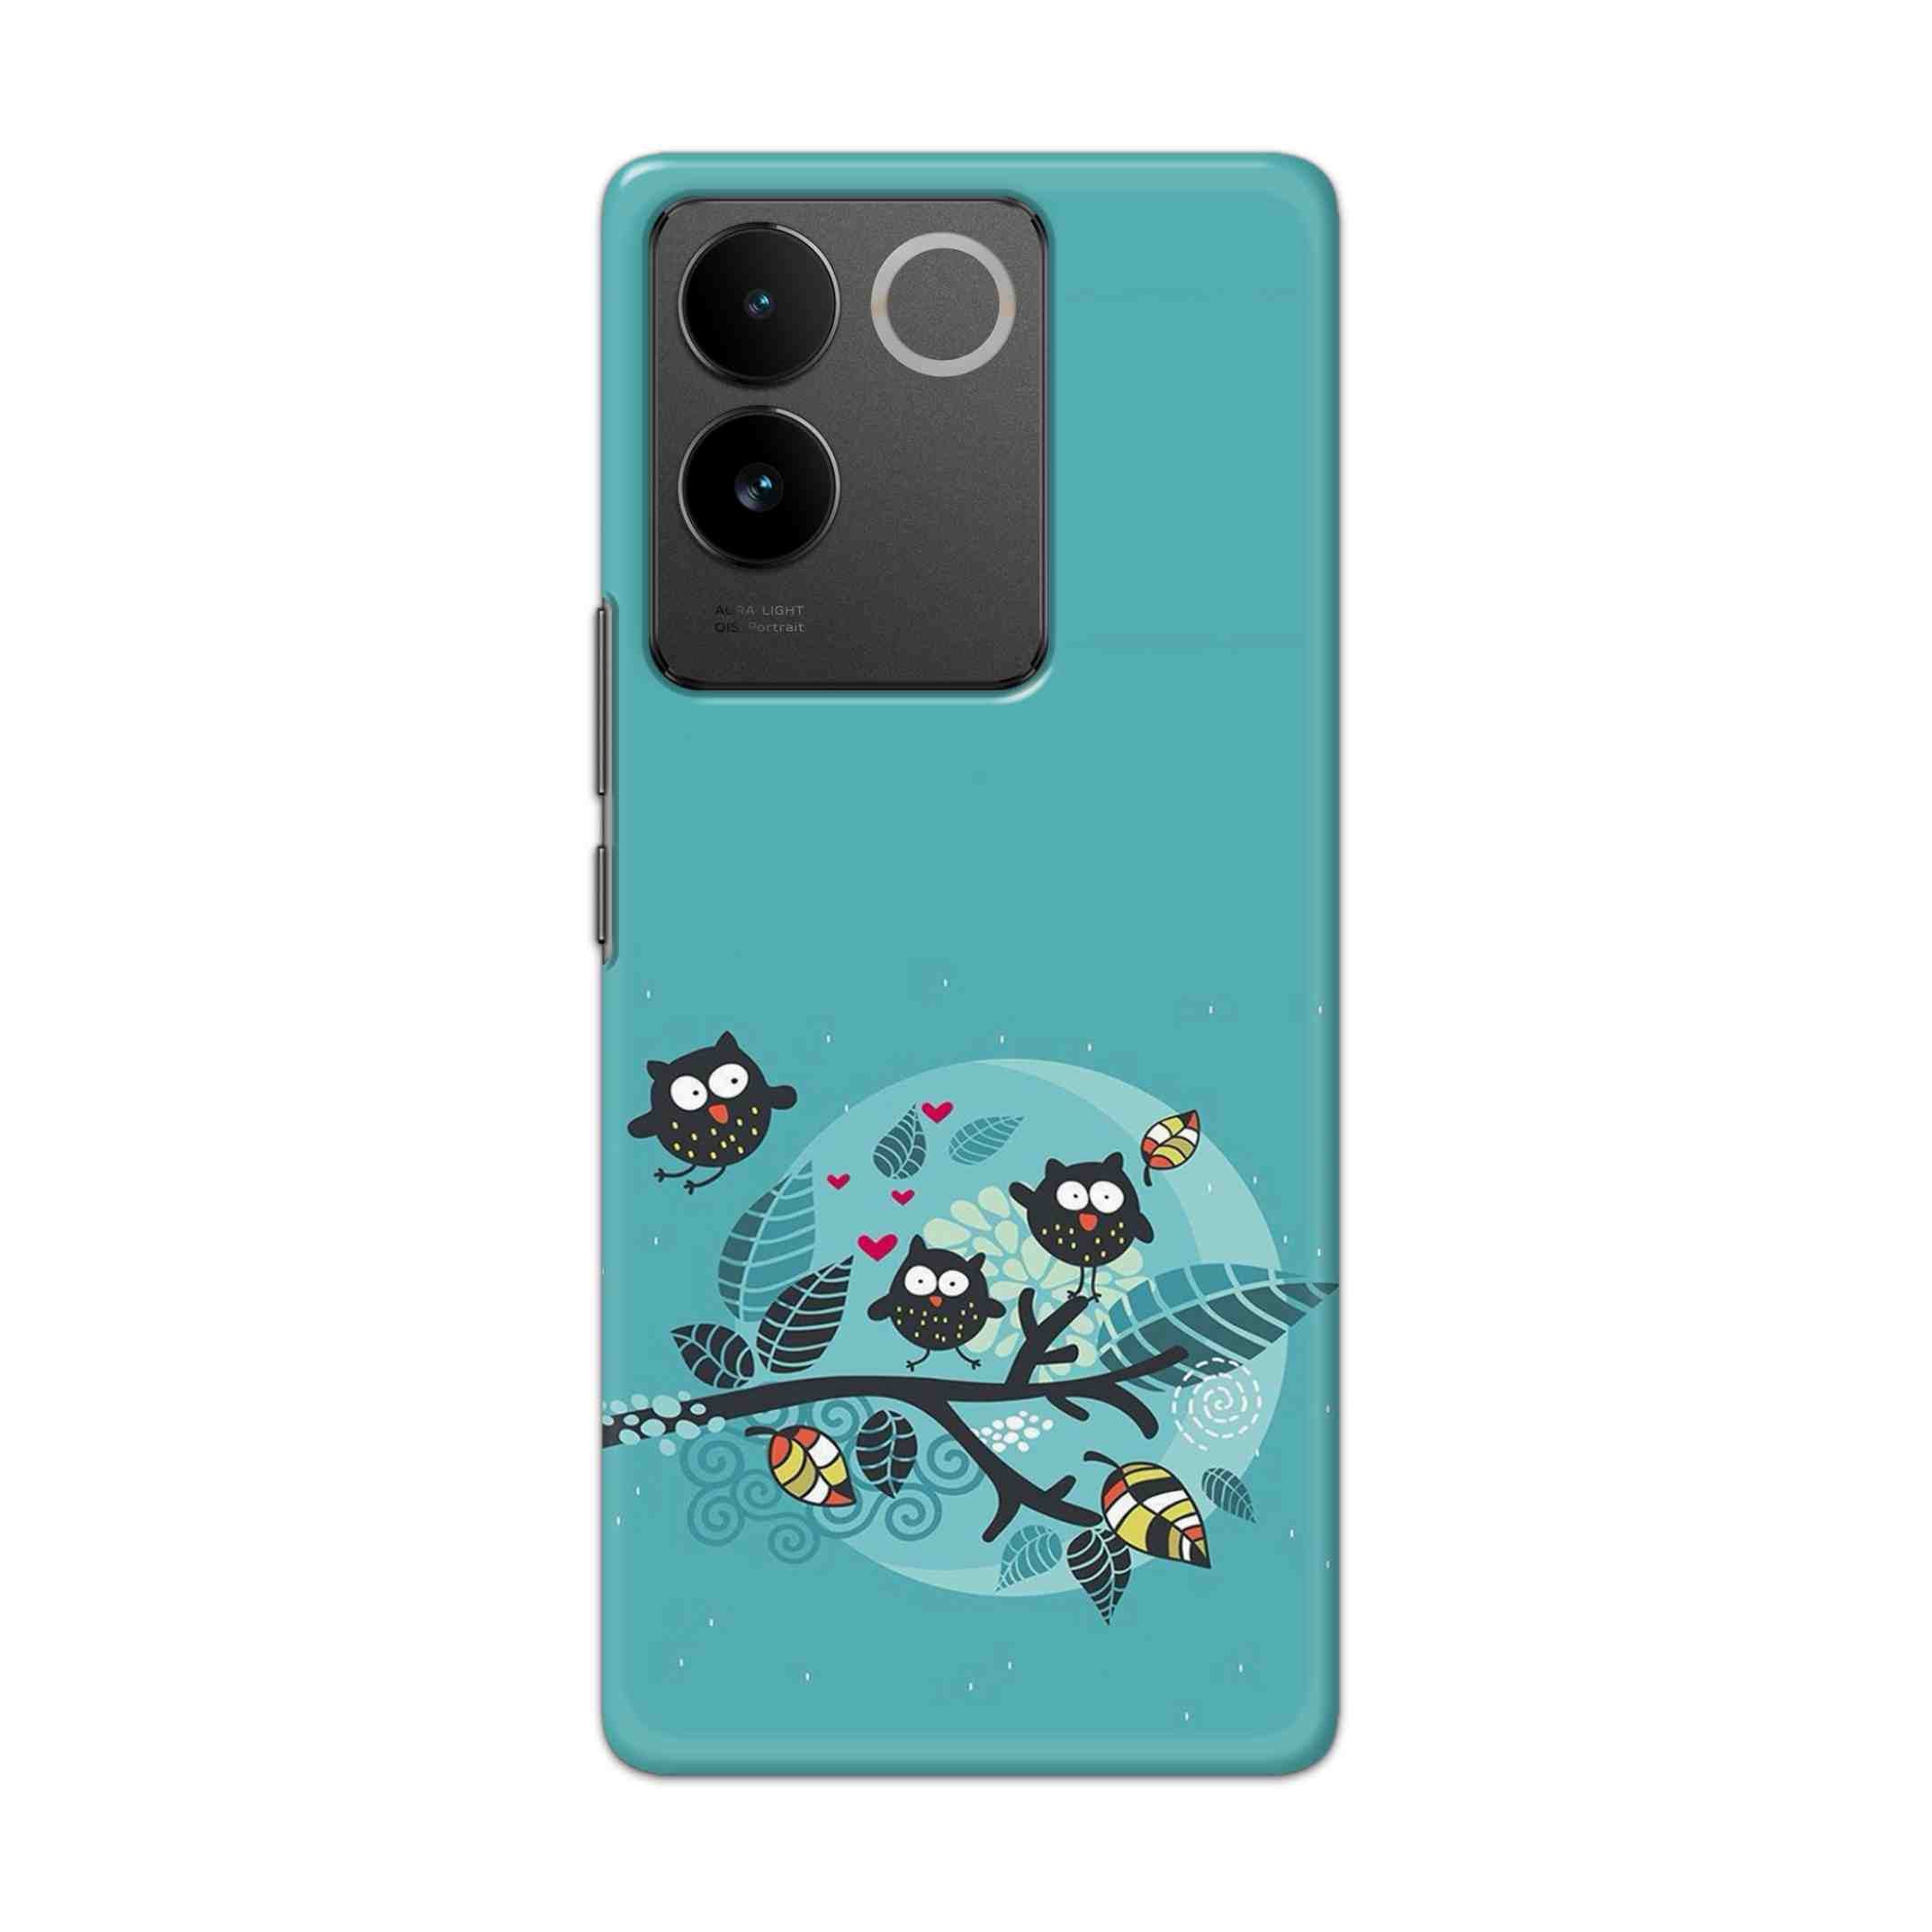 Buy Owl Hard Back Mobile Phone Case/Cover For vivo T2 Pro 5G Online